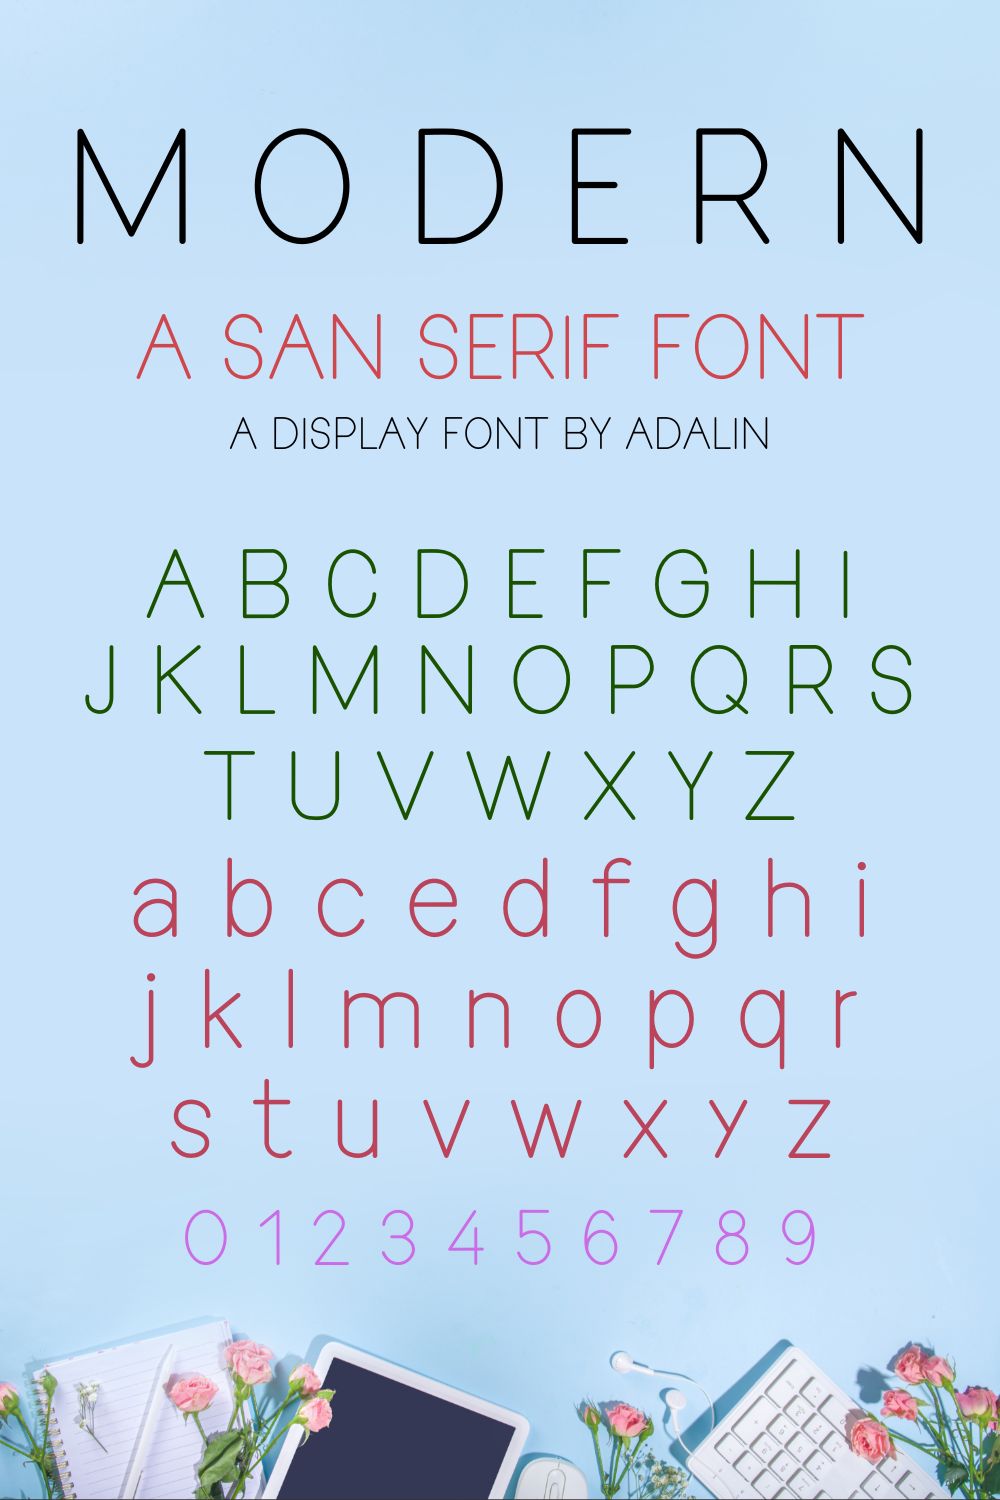 Modern - San Serif font pinterest preview image.